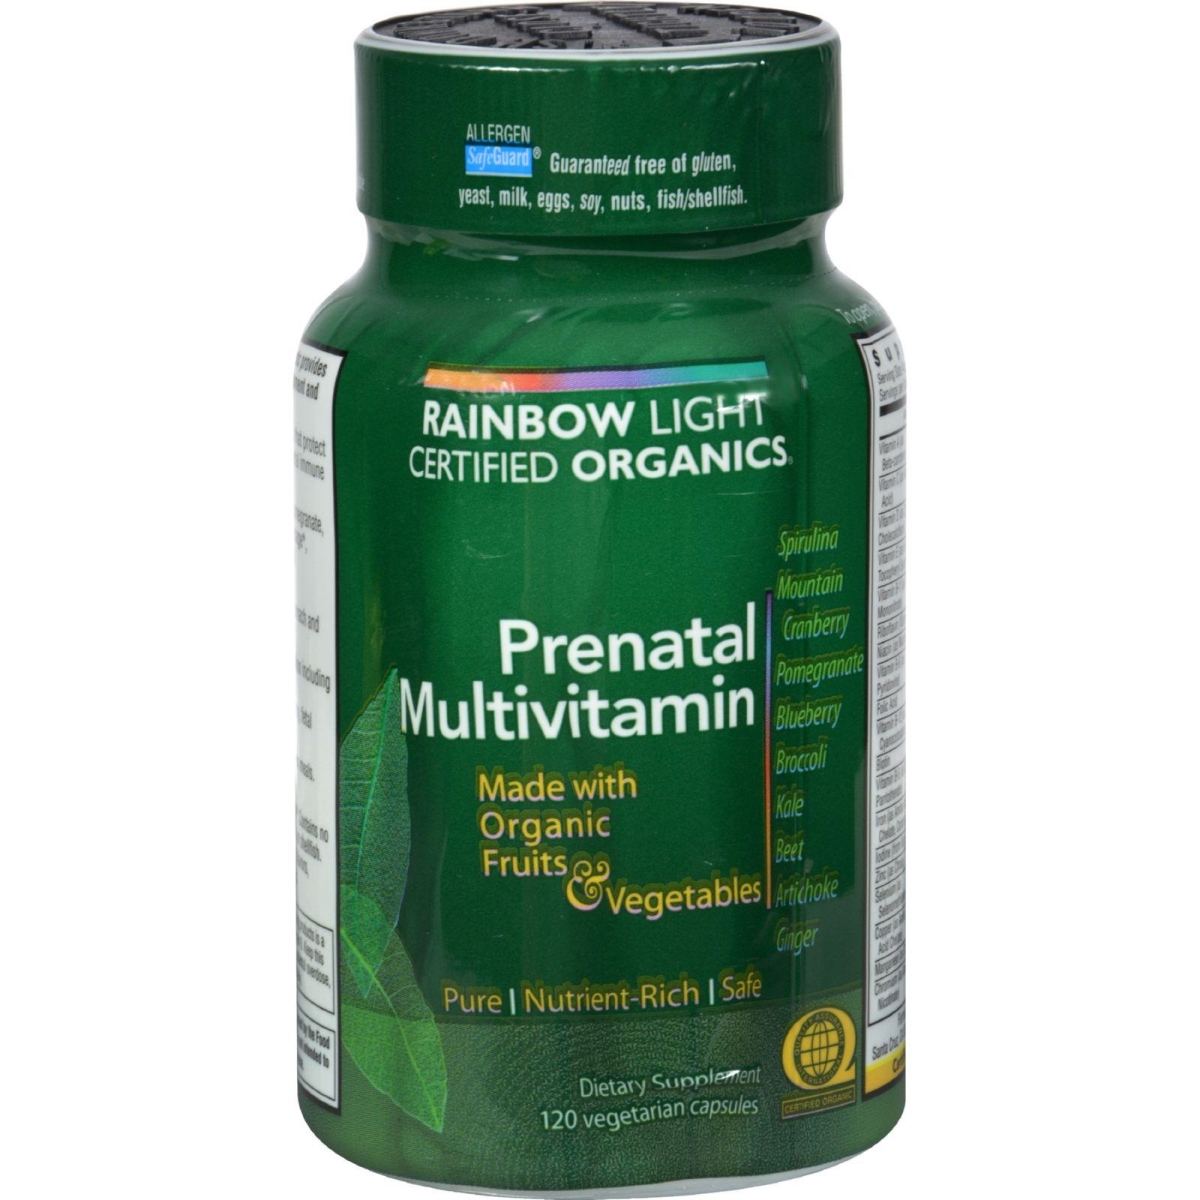 Hg0235564 Certified Organics Prenatal Multivitamin, 120 Vegetarian Capsules